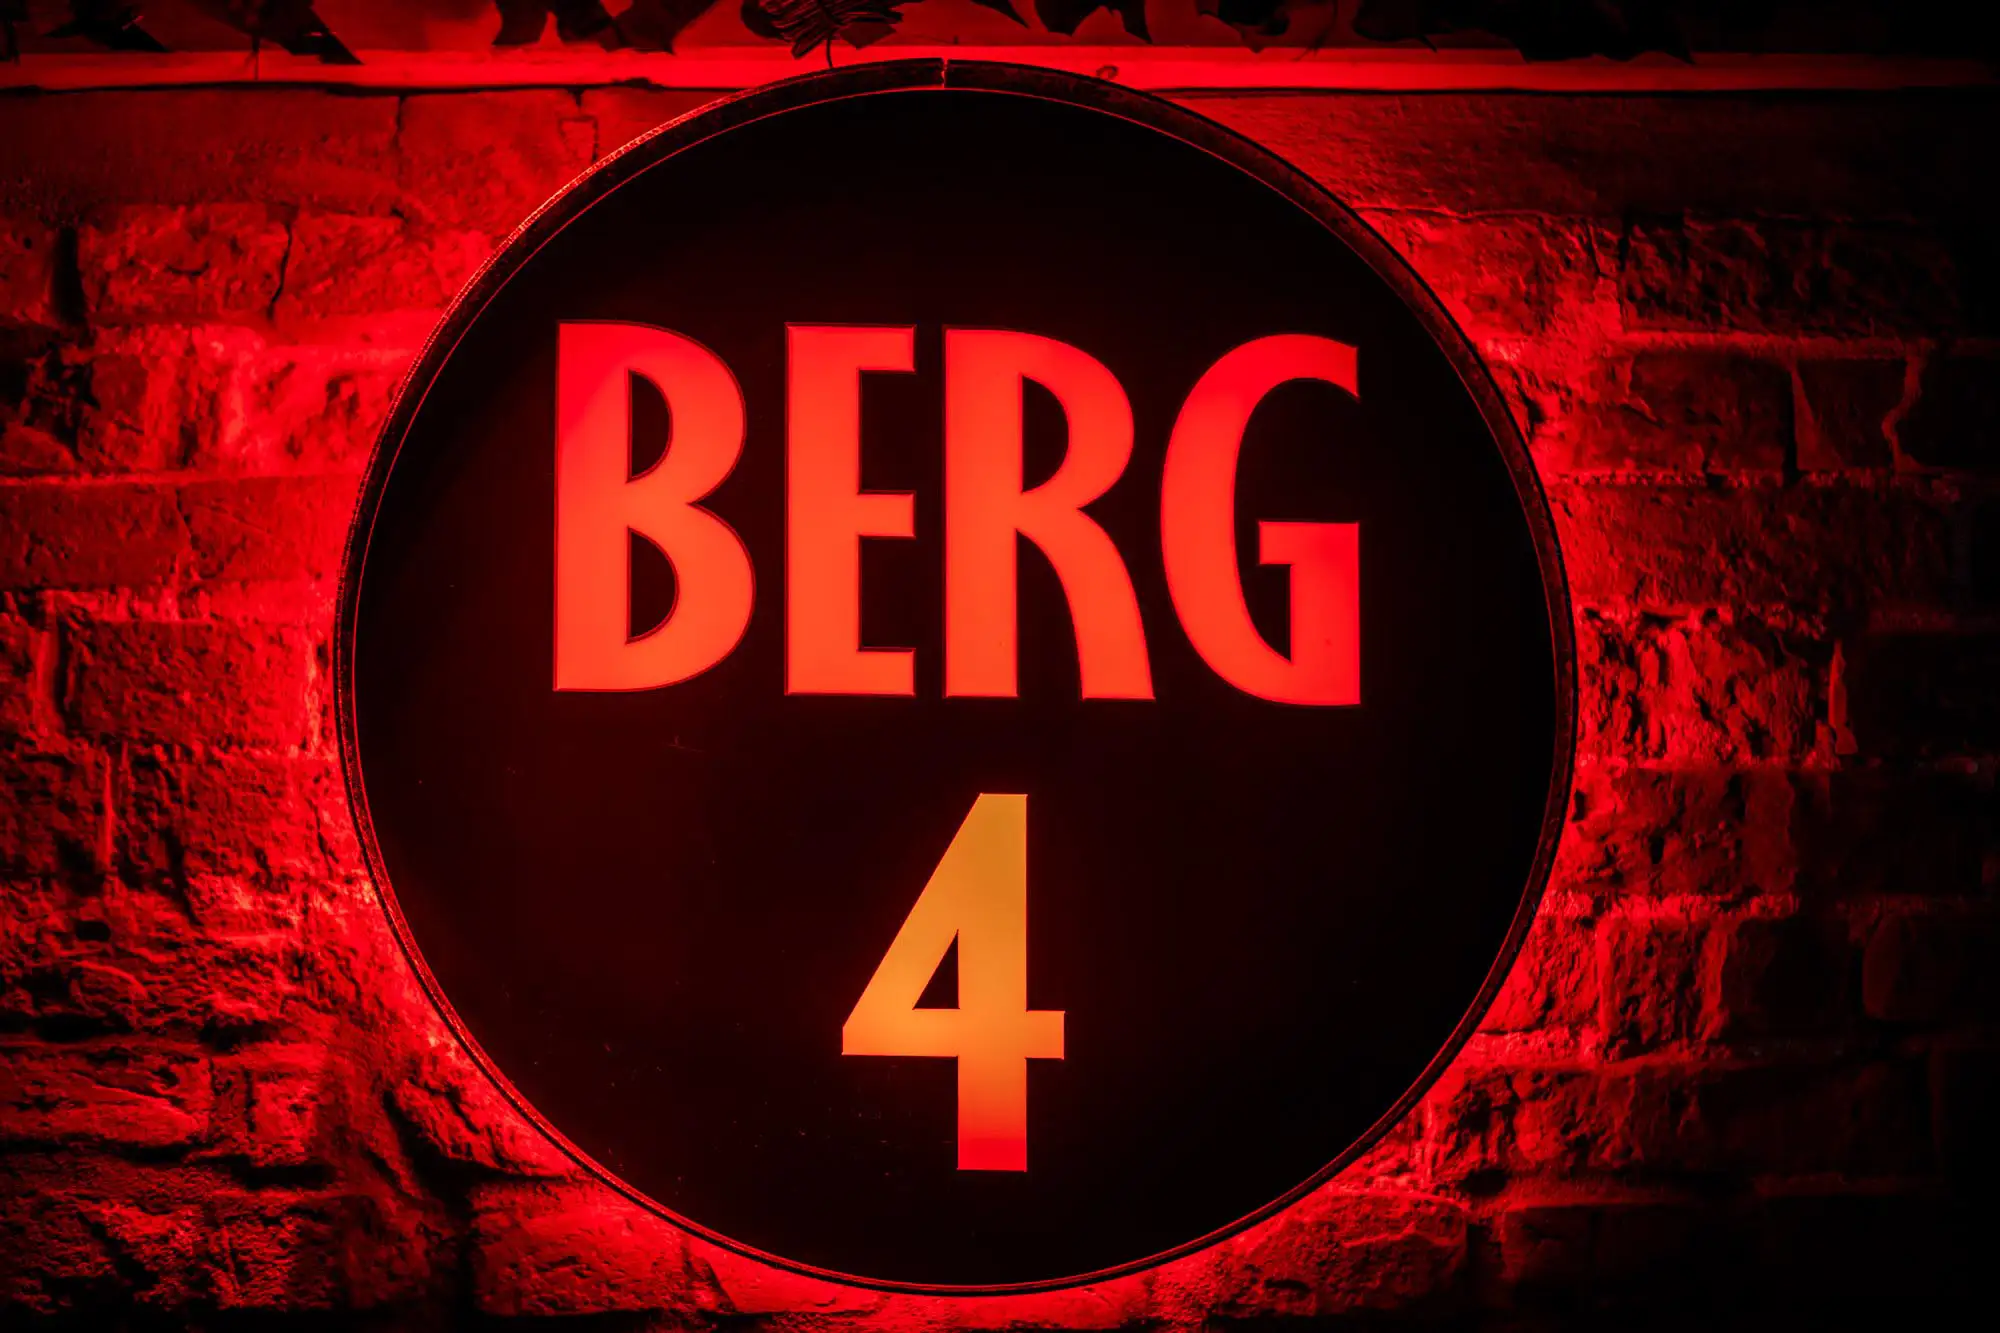 Leuchtschild mit Berg4 Logo